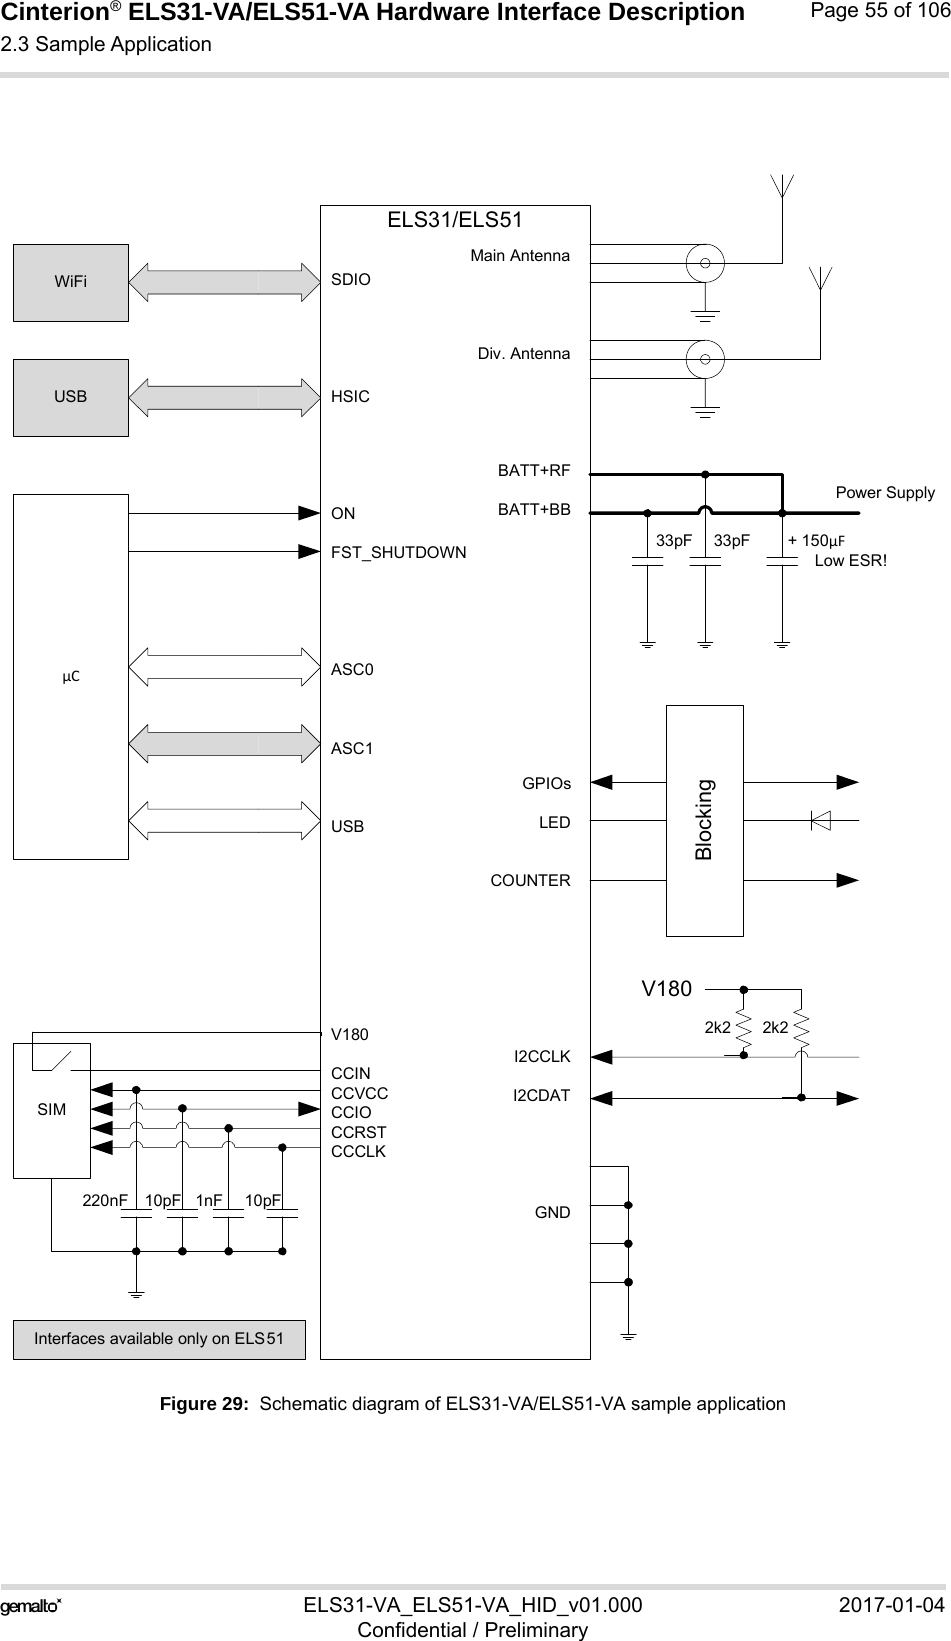 Cinterion® ELS31-VA/ELS51-VA Hardware Interface Description2.3 Sample Application56ELS31-VA_ELS51-VA_HID_v01.000 2017-01-04Confidential / PreliminaryPage 55 of 106Figure 29:  Schematic diagram of ELS31-VA/ELS51-VA sample applicationELS31/ELS51Main AntennaDiv. AntennaBATT+RFBATT+BBGPIOsLEDCOUNTERI2CCLKI2CDATGNDSDIOHSICONFST_SHUTDOWNASC0ASC1USBV180CCINCCVCCCCIOCCRSTCCCLKPower Supply33pF 33pF + 150µFLow ESR!2k2 2k2V180BlockingWiFiµC1nF 10pF10pF220nFSIMUSBInterfaces available only on ELS51